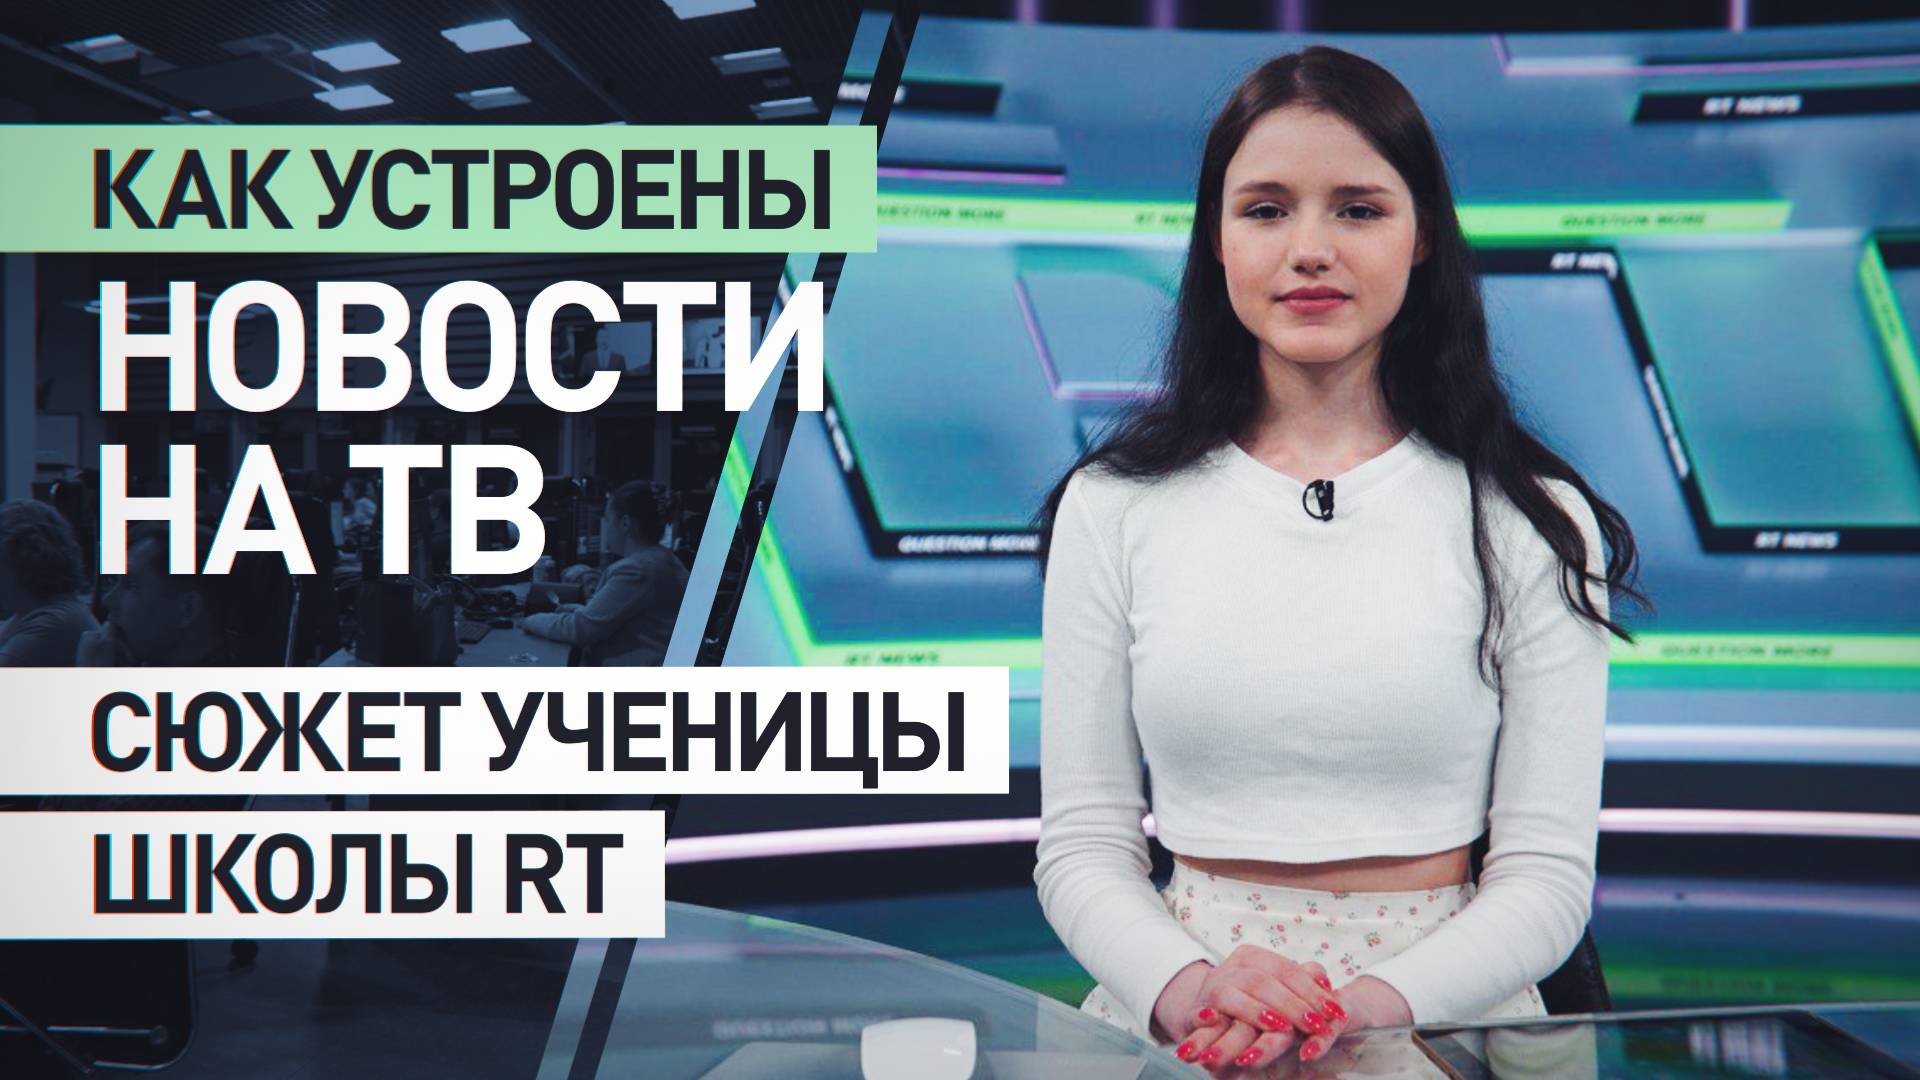 Как стать корреспондентом: 17-летняя ученица Школы RT сняла сюжет о работе канала